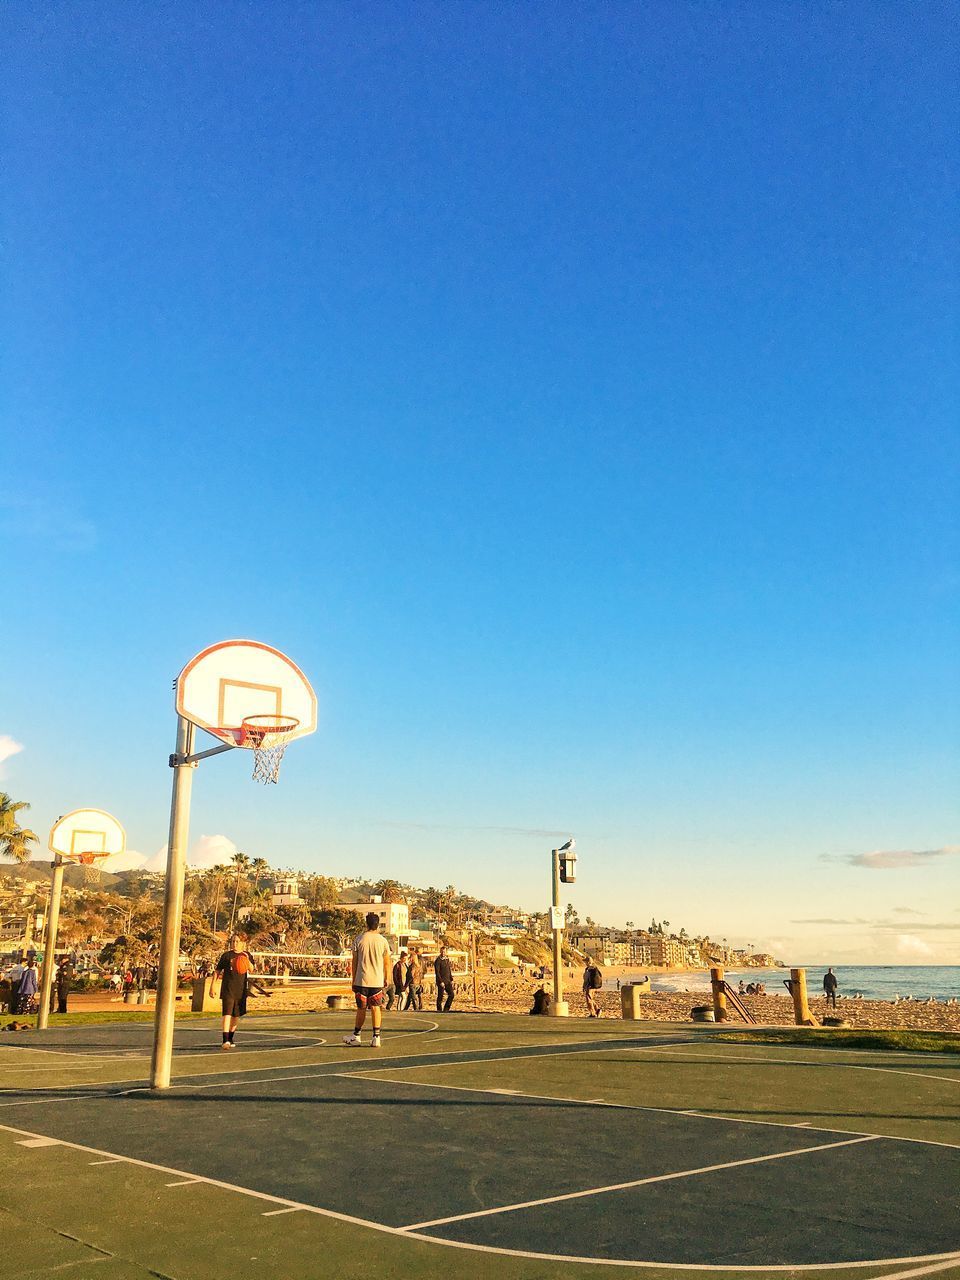 PEOPLE PLAYING BASKETBALL HOOP AGAINST BLUE SKY